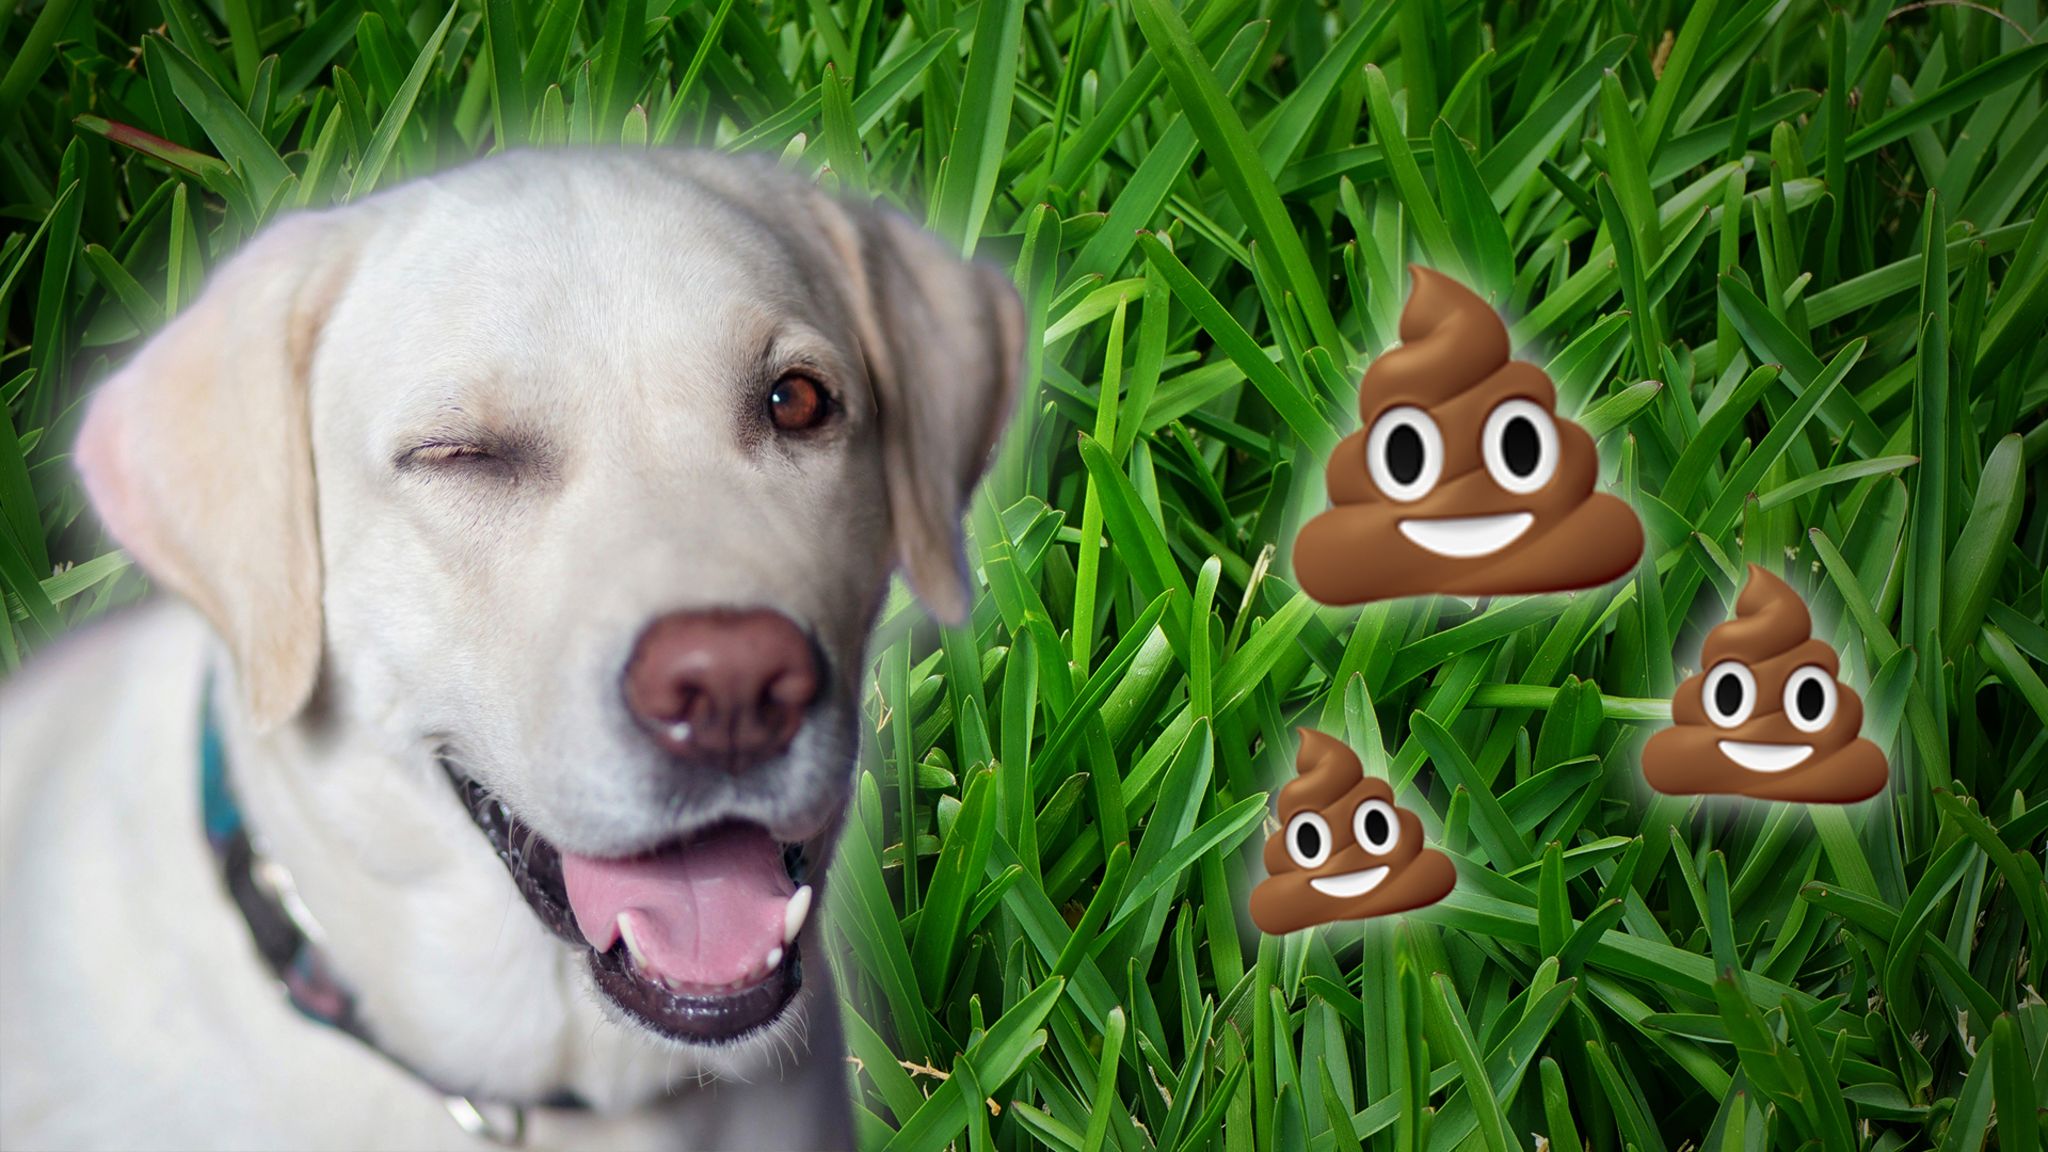 winking-dog-poo-emoji